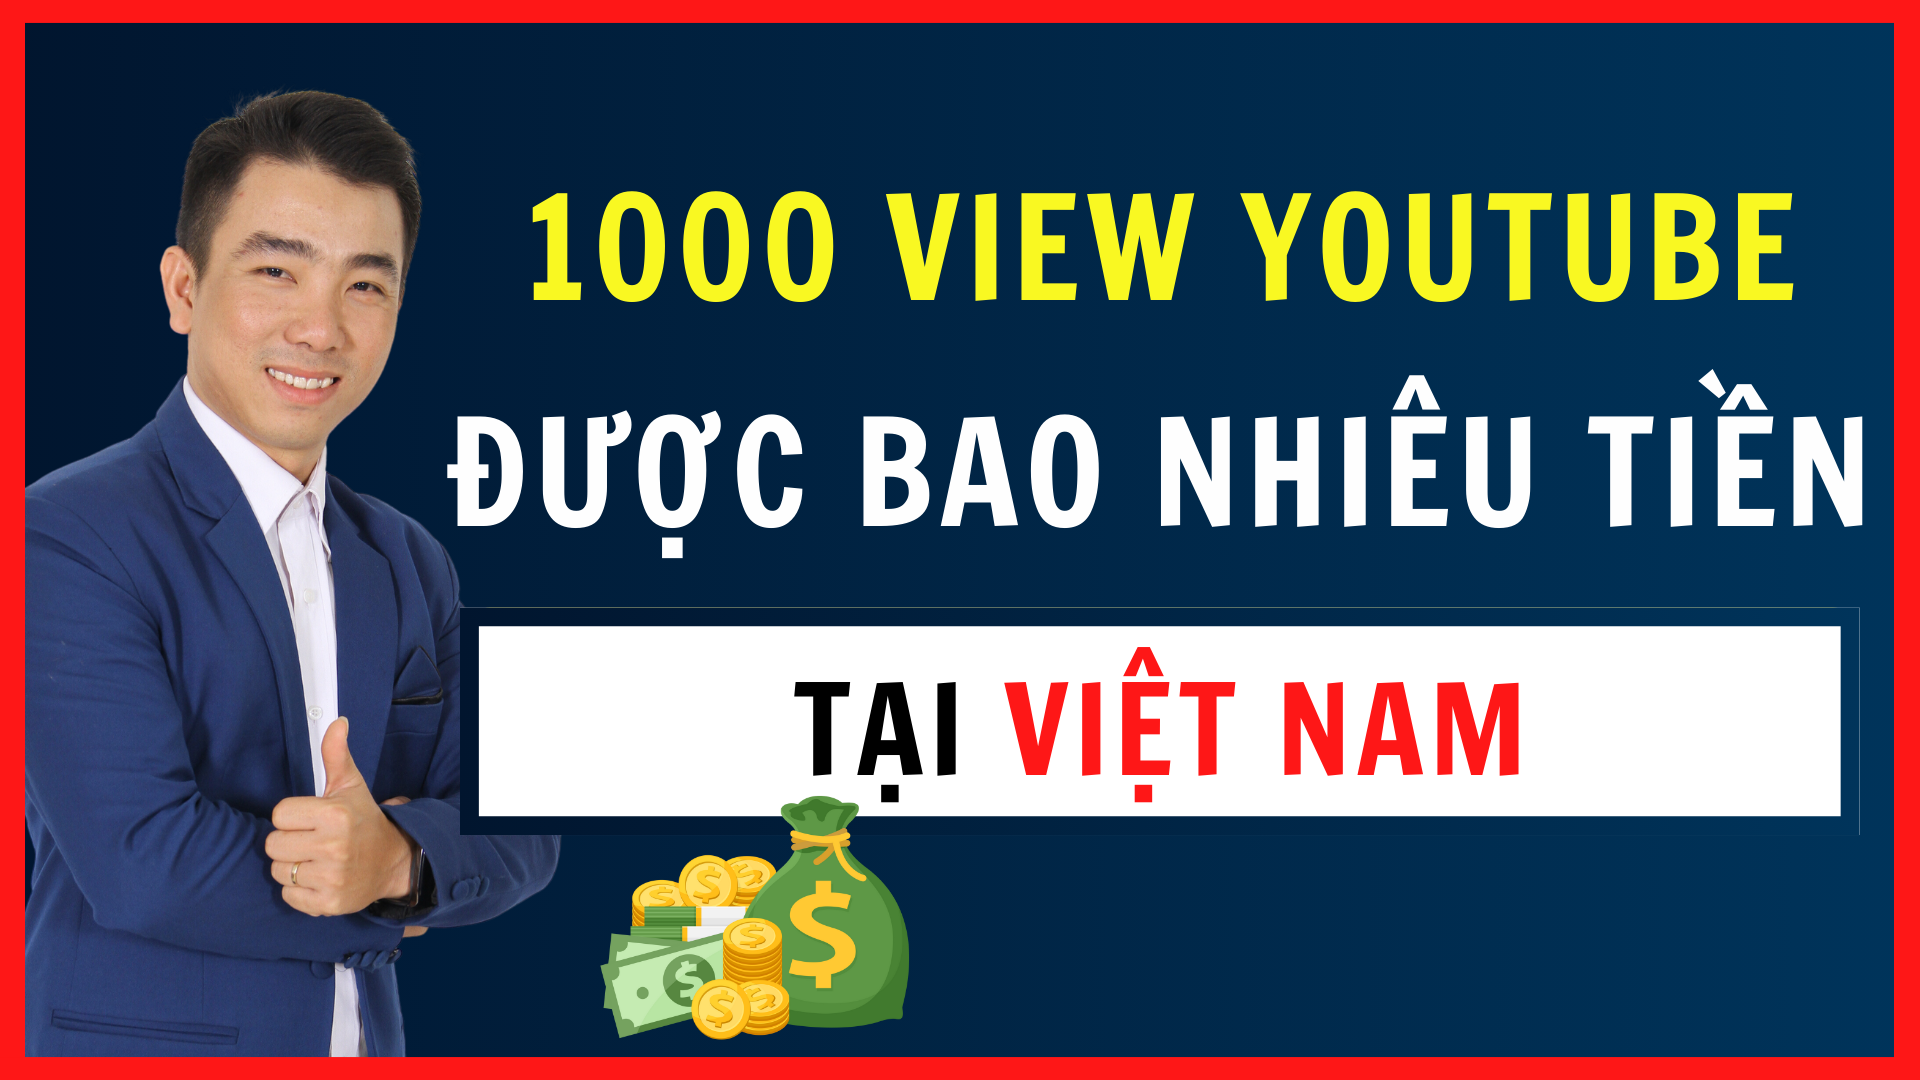 1000 view Youtube kiếm được bao nhiêu tiền tại Việt Nam